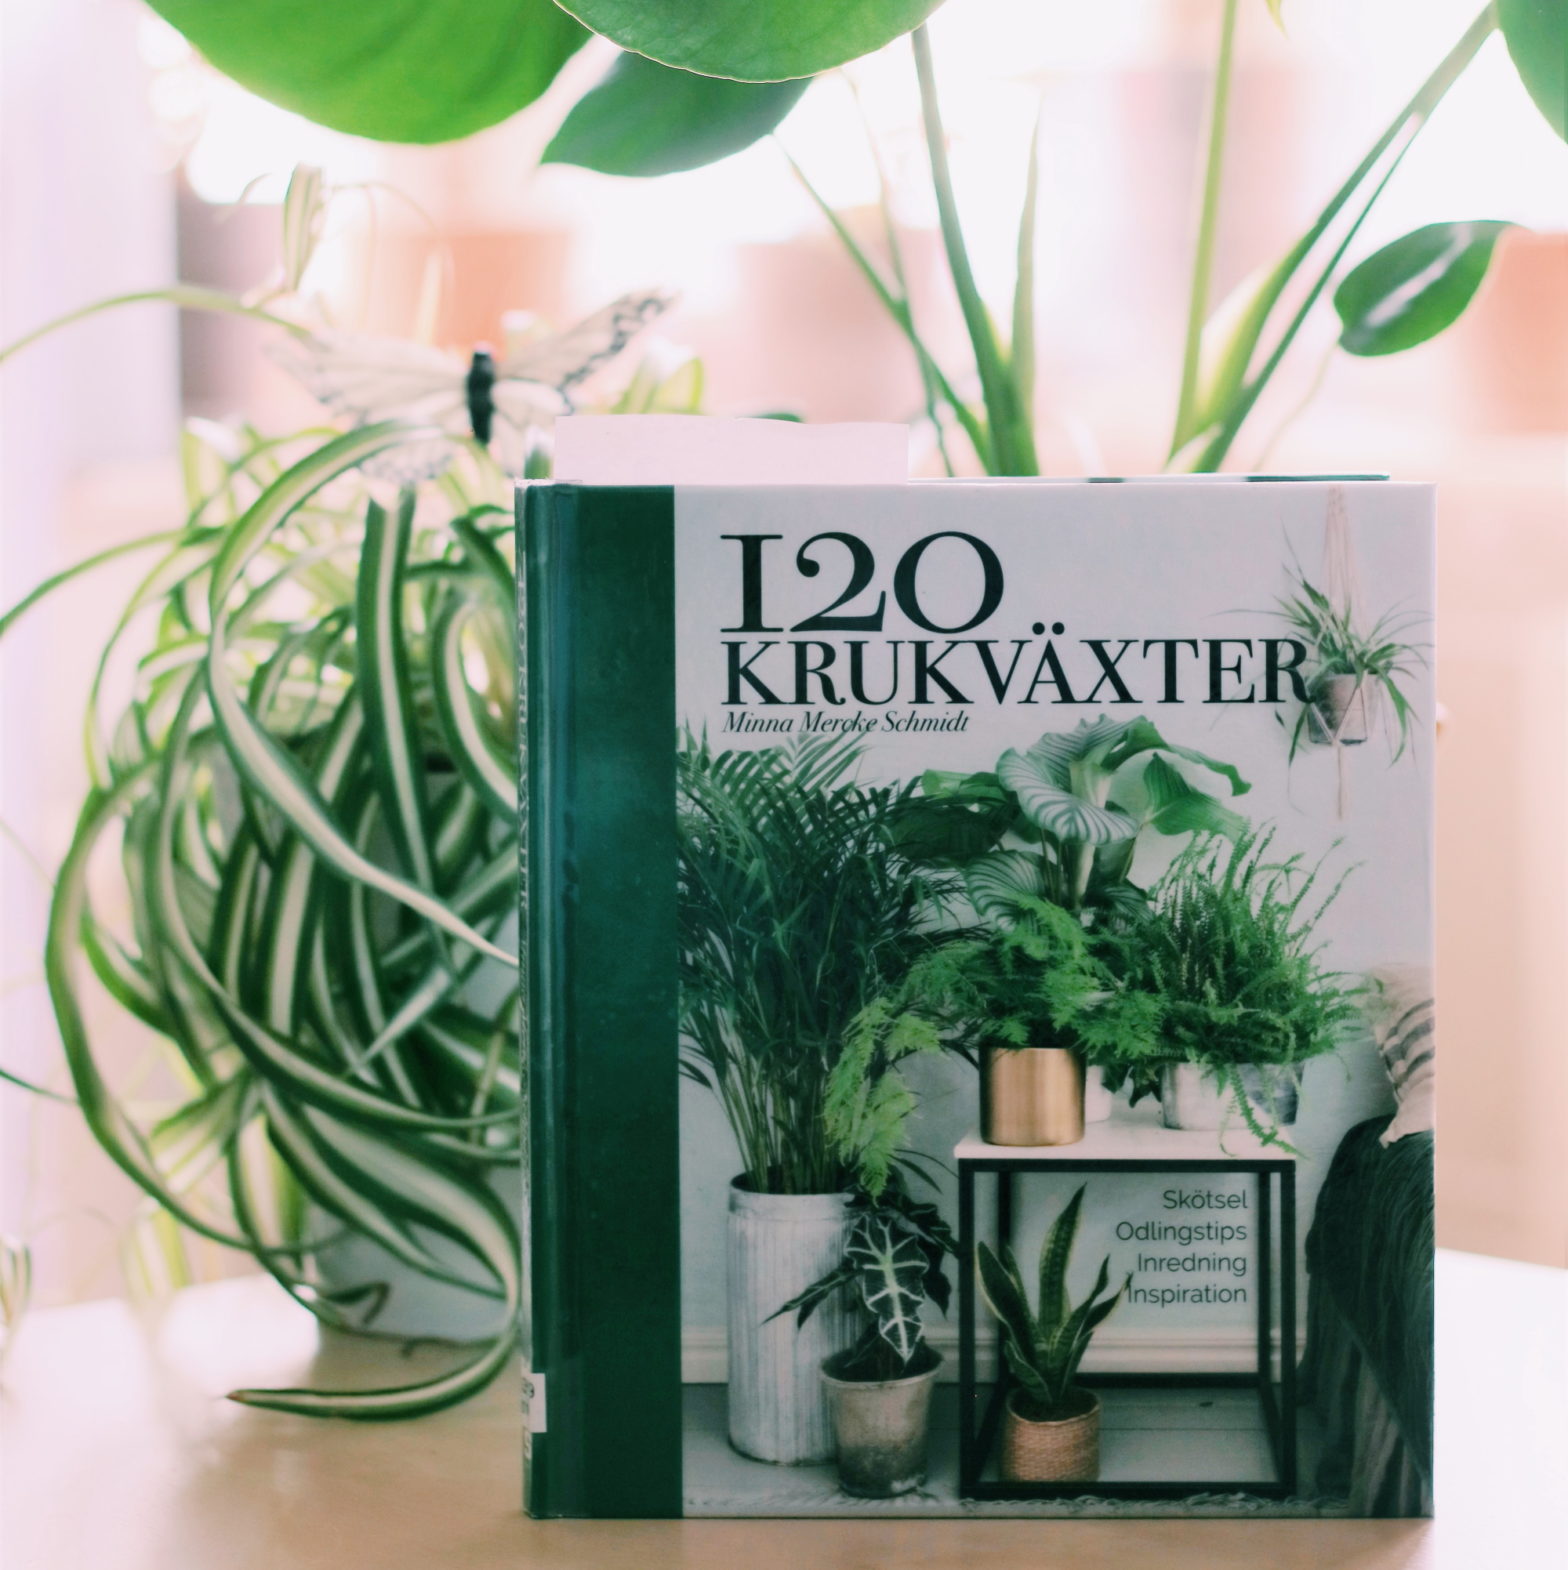 120 krukväxter av Minna Mercke Schmidt